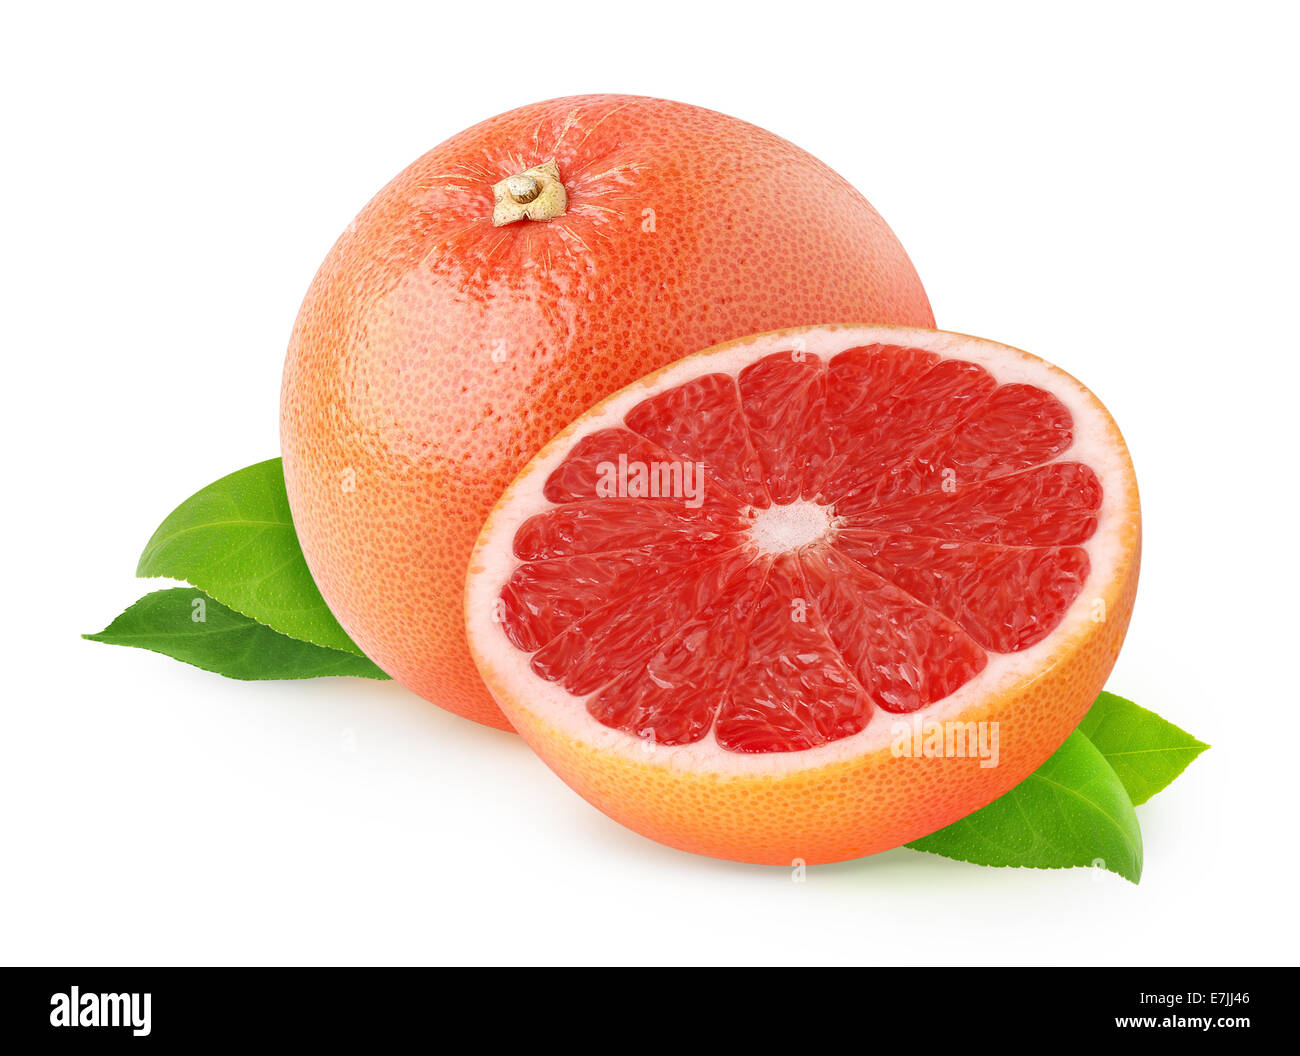 Плода грейпфрута. Апельсин грейпфрут помело. Грейпфрут красный. Розовый грейпфрут. Грейпфрут на белом фоне.